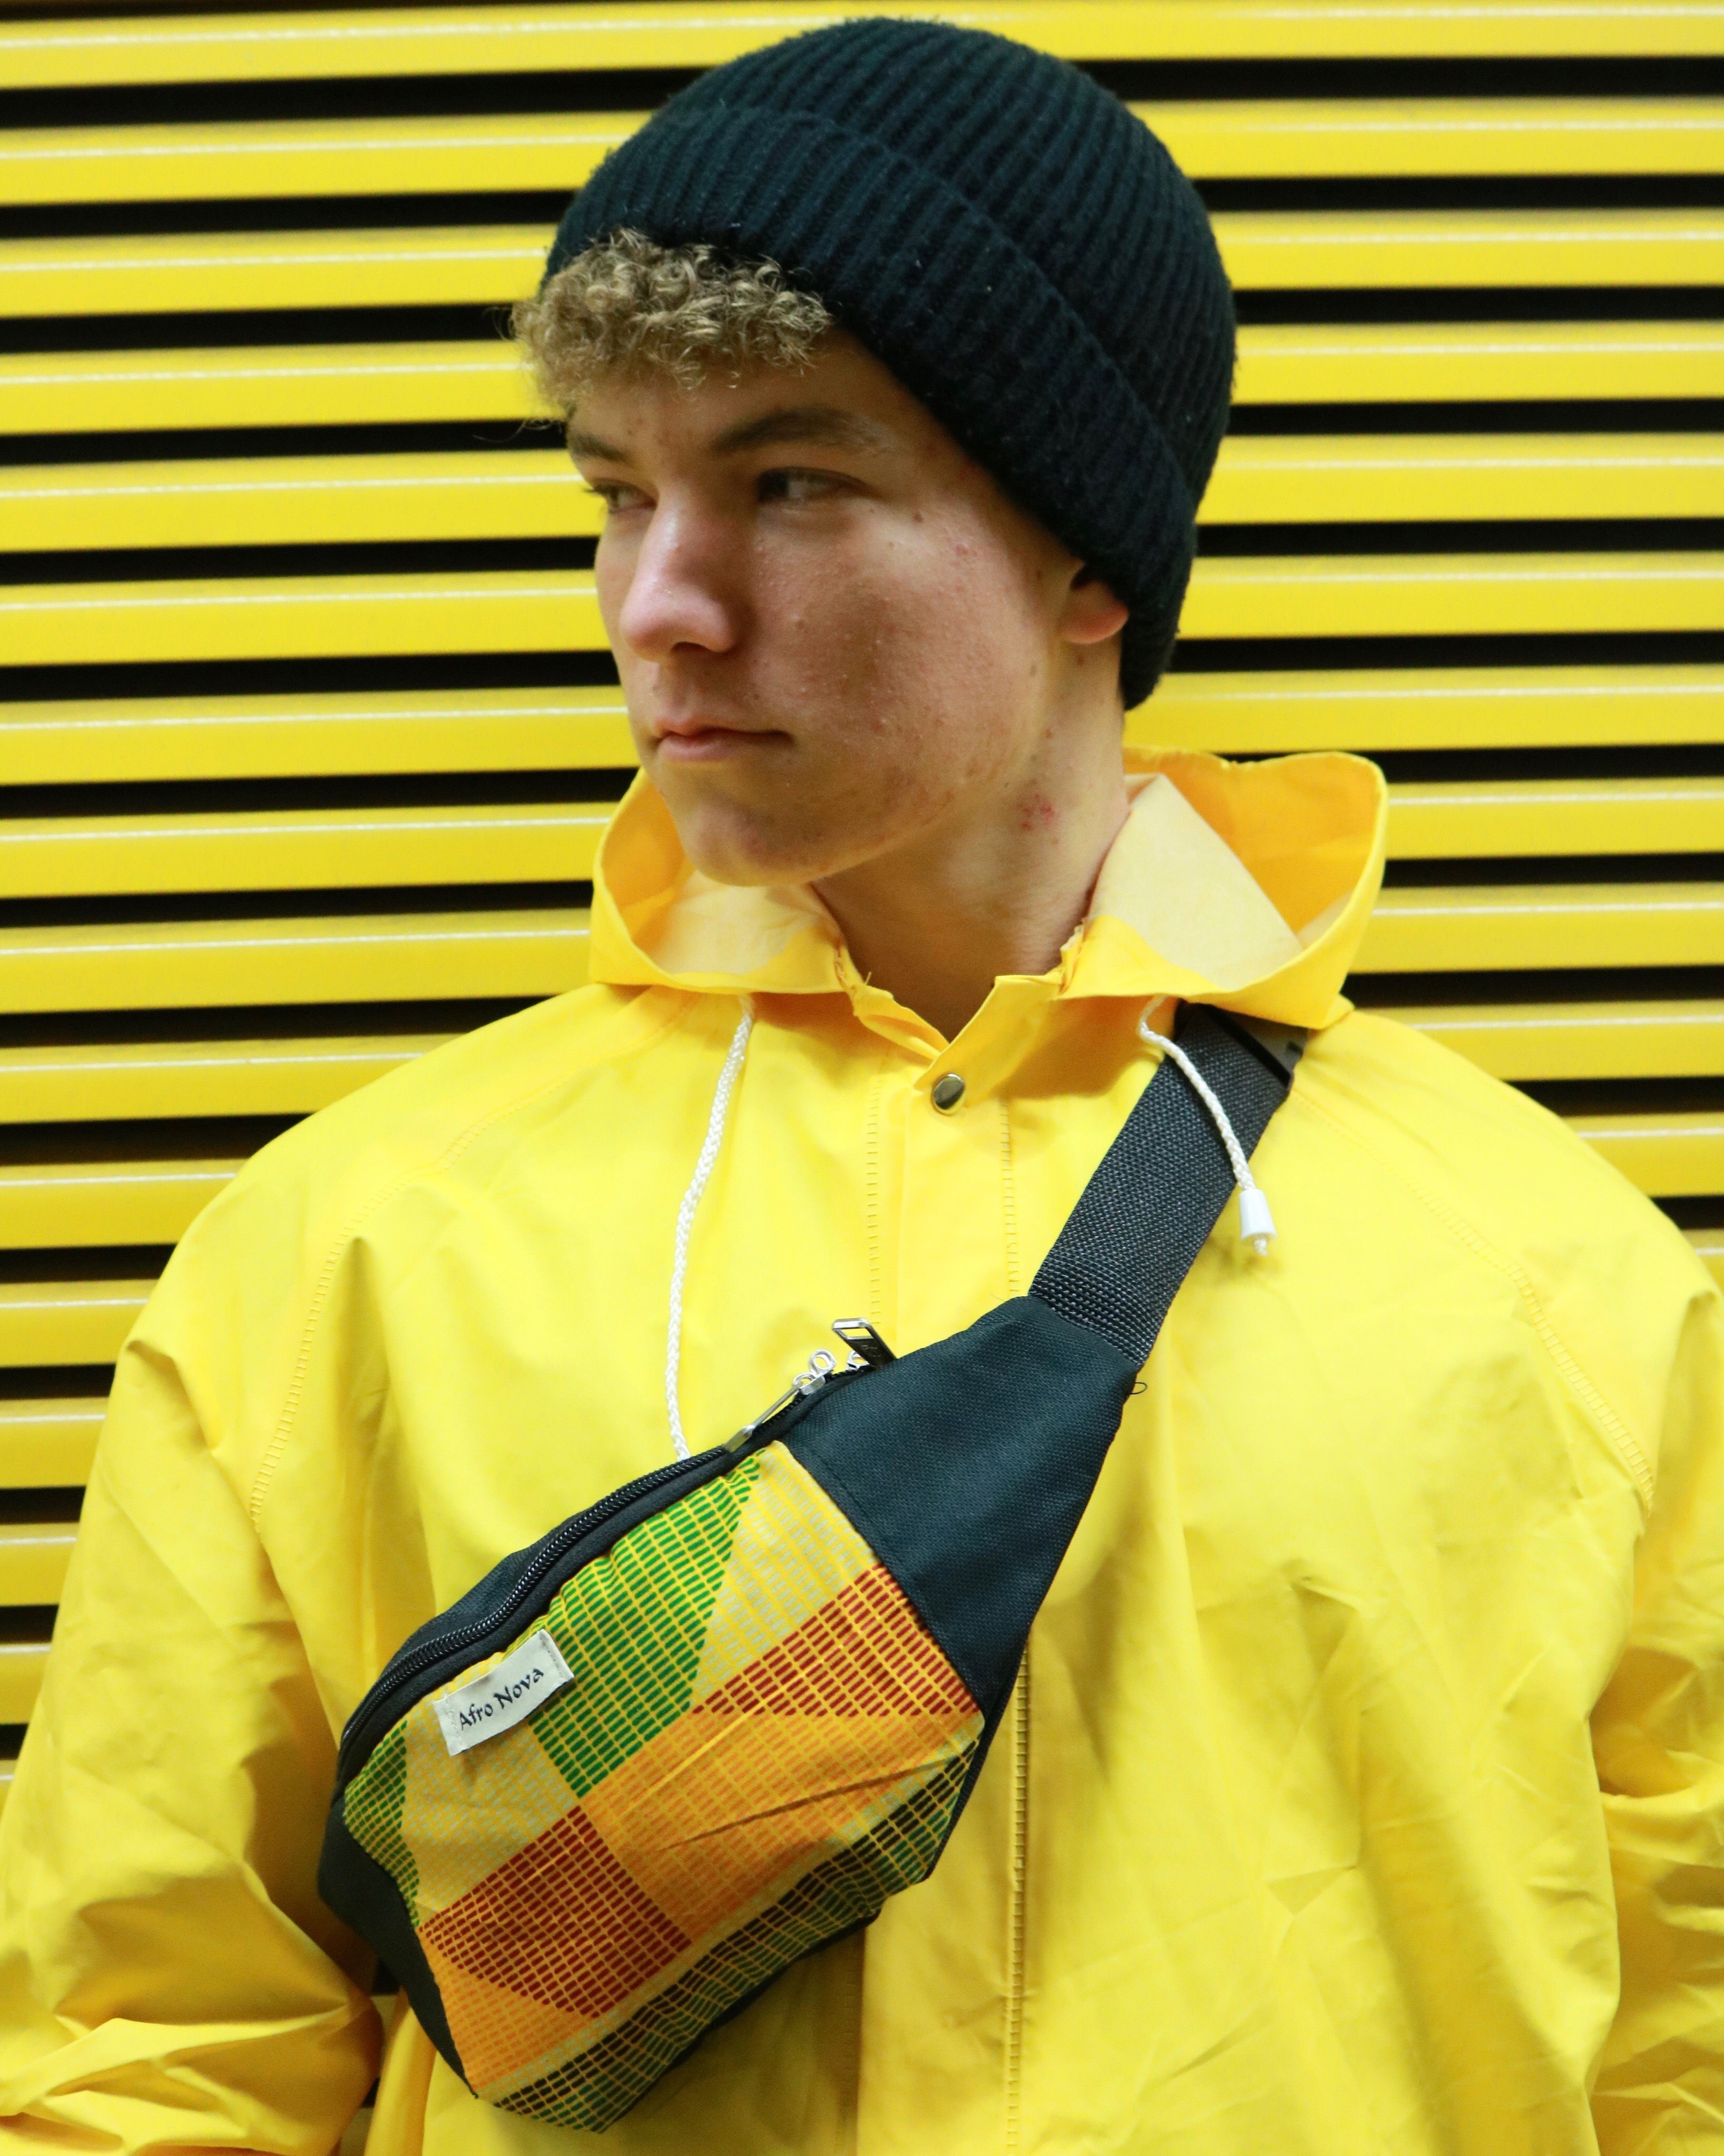 Bunte Bauchtasche für Festivals oder Reisen getragen von einem Mann mit gelber Regenjacke vor gelbem Hintergrund